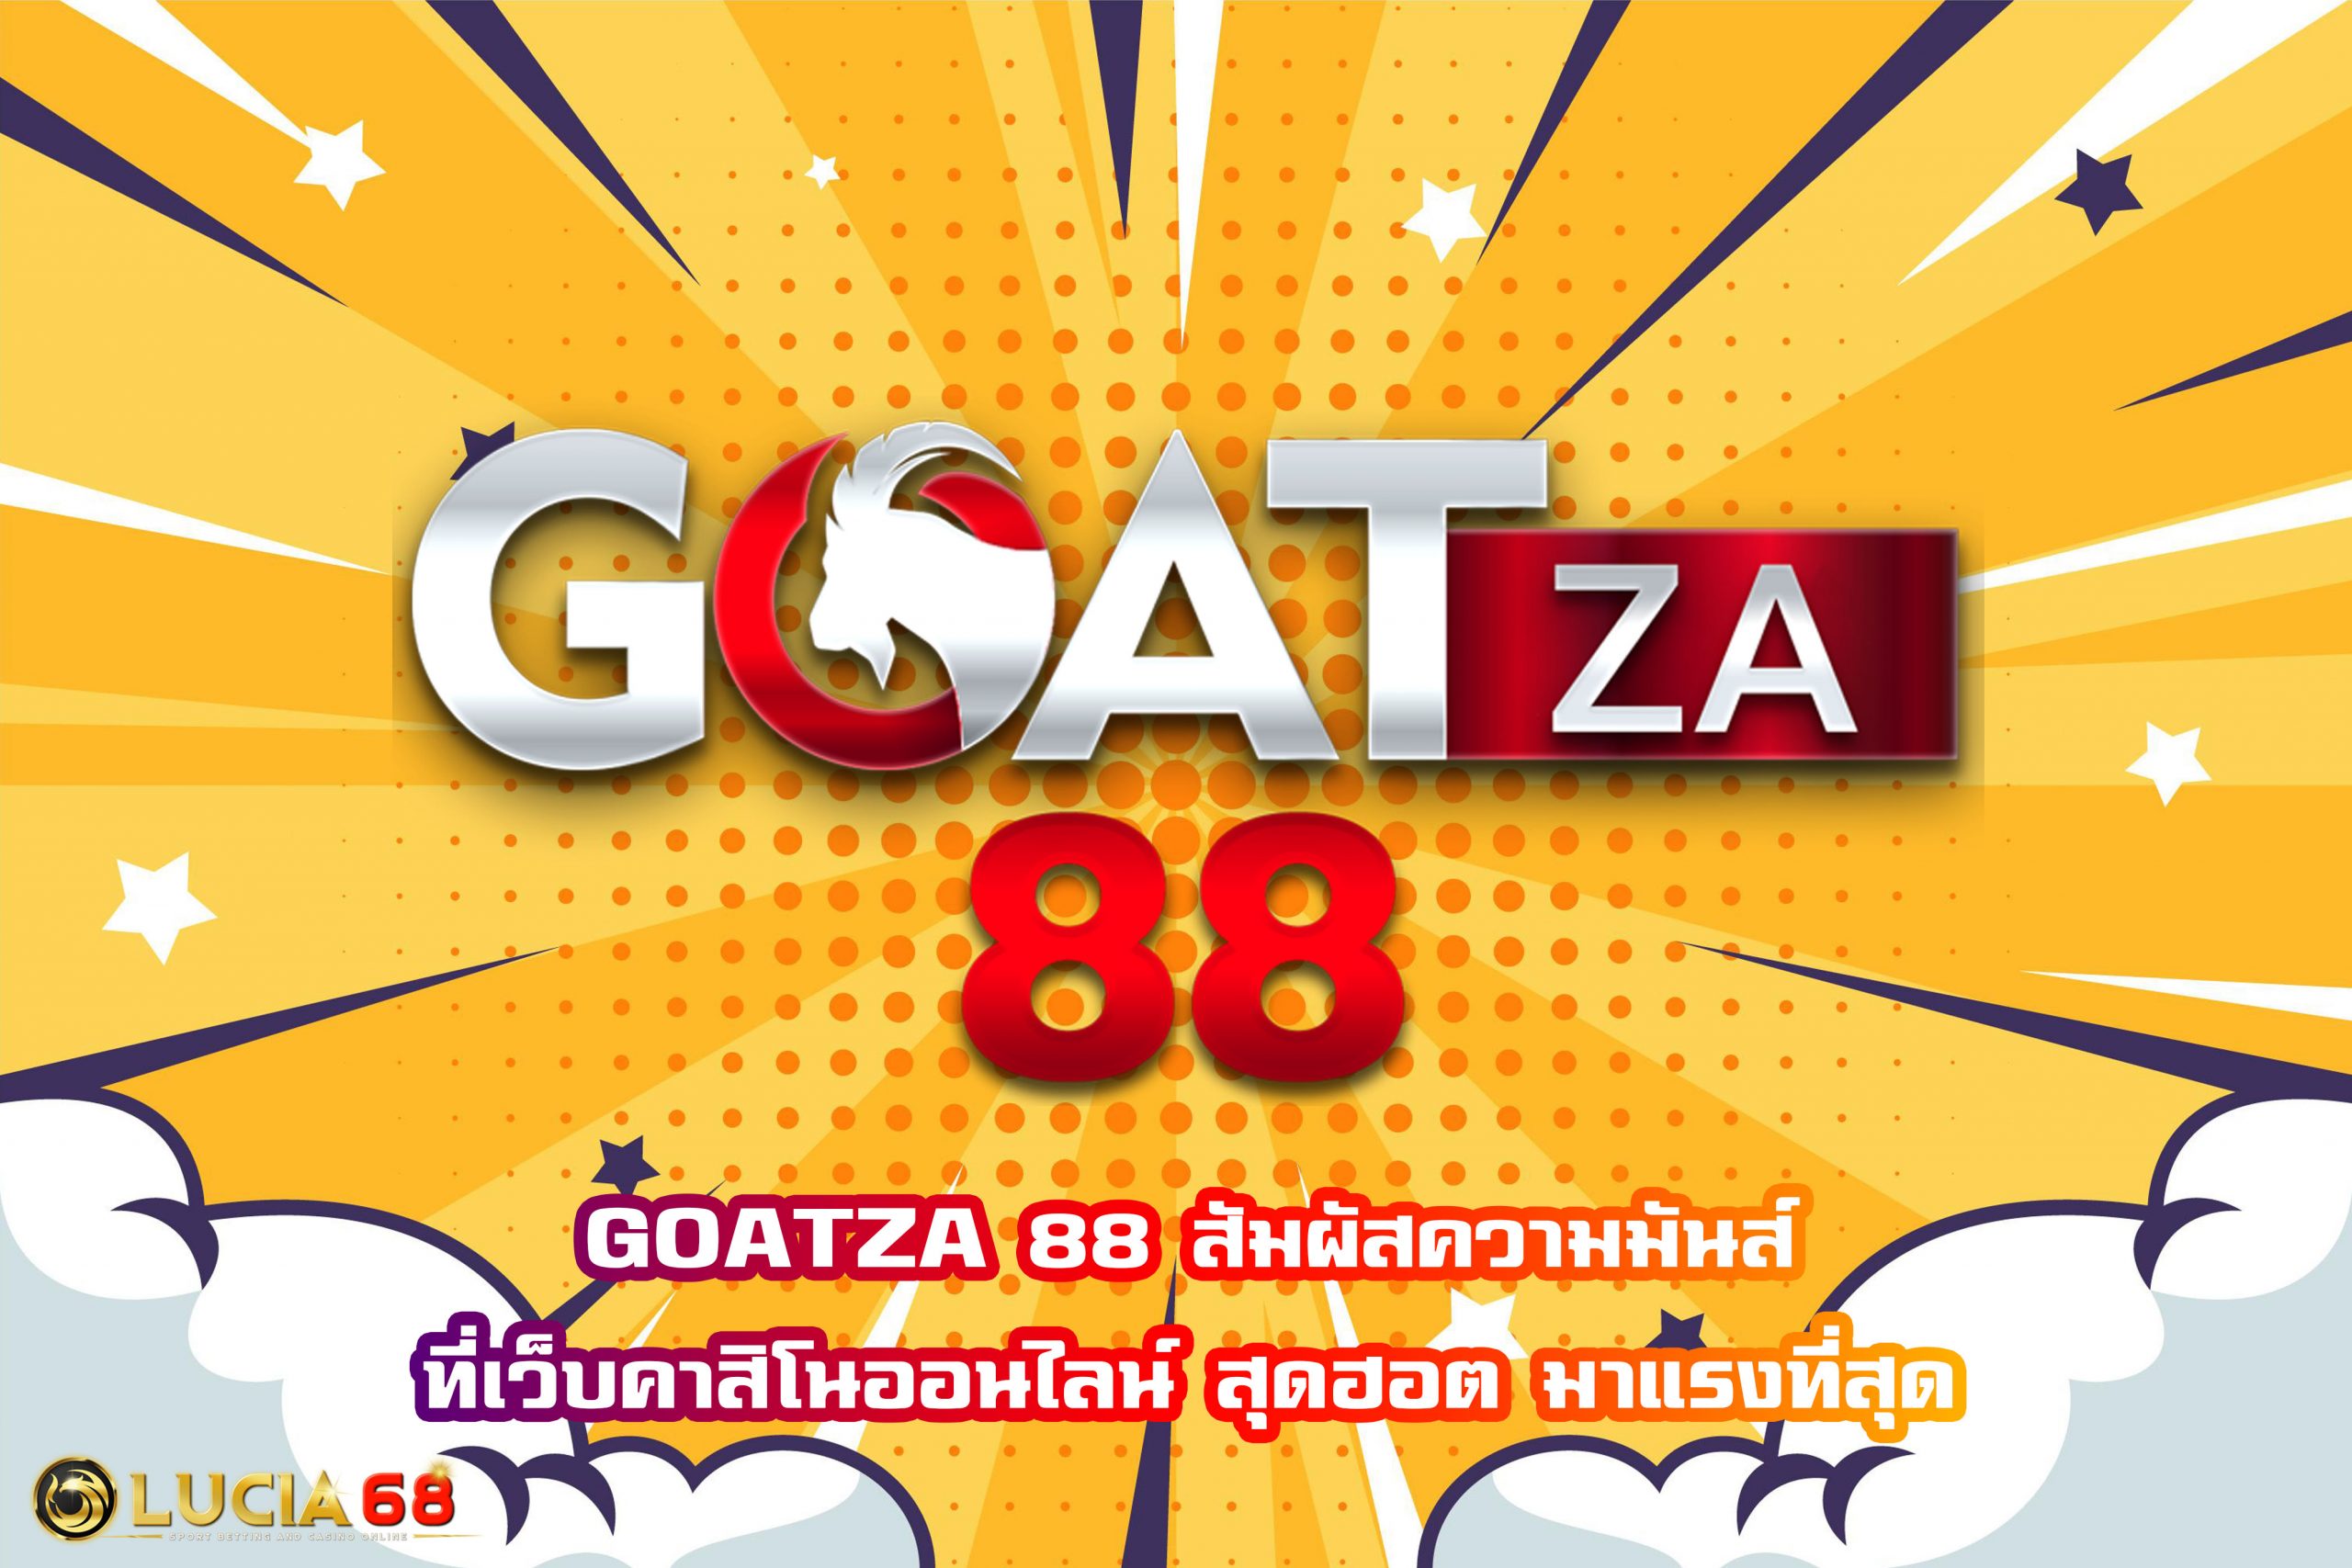 GOATZA 88 สัมผัสความมันส์ที่เว็บคาสิโนออนไลน์ สุดฮอต มาแรงที่สุด